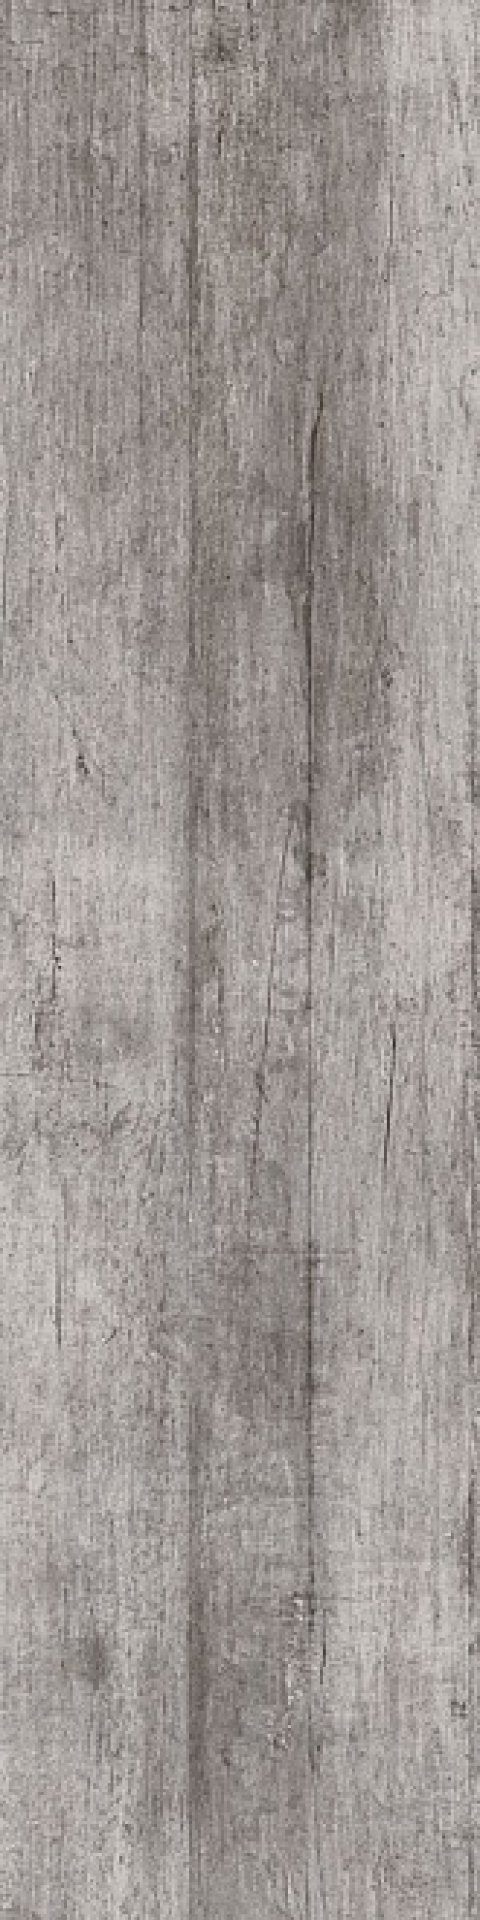 Керамический гранит Антик Вуд серый обрезной DL700700R (KERAMA MARAZZI)